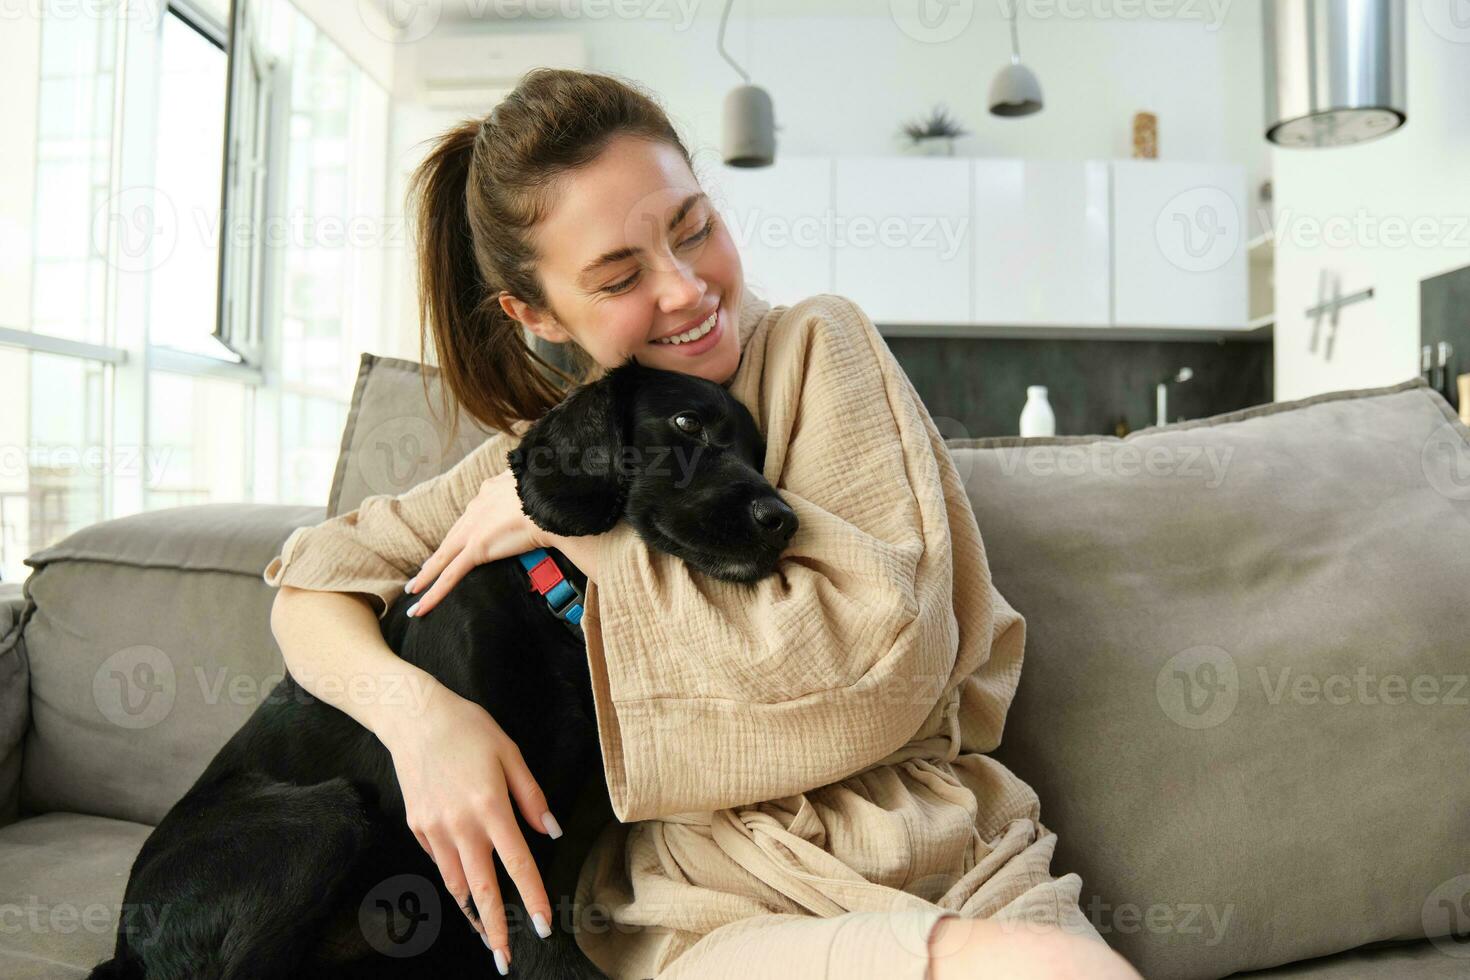 animales y estilo de vida concepto. contento joven mujer en bata de baño, abrazos su perro en sofá, abrazo perrito y sonriente foto